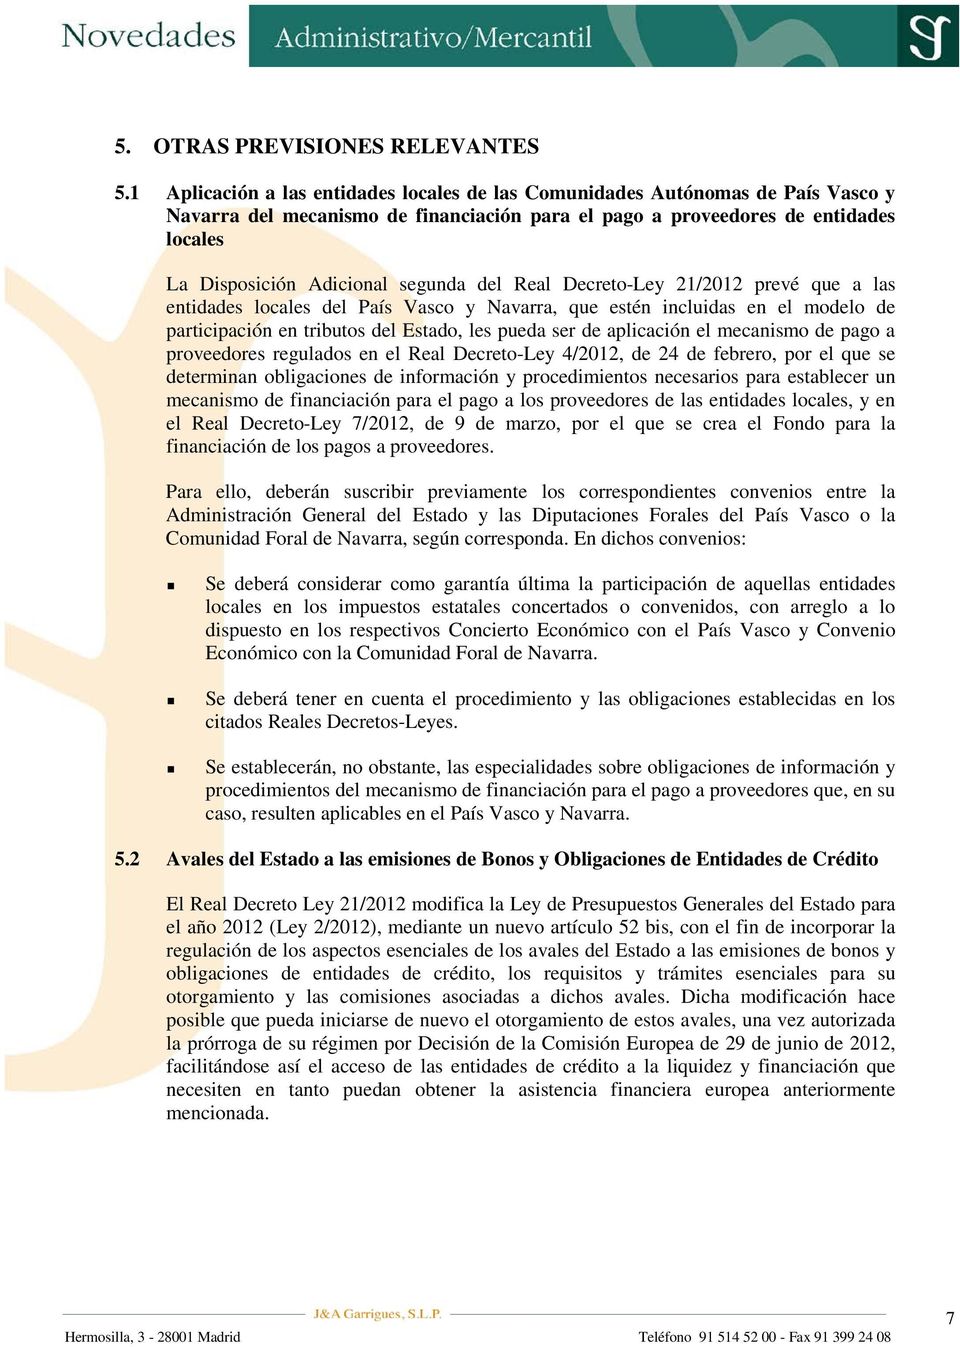 segunda del Real Decreto-Ley 21/2012 prevé que a las entidades locales del País Vasco y Navarra, que estén incluidas en el modelo de participación en tributos del Estado, les pueda ser de aplicación